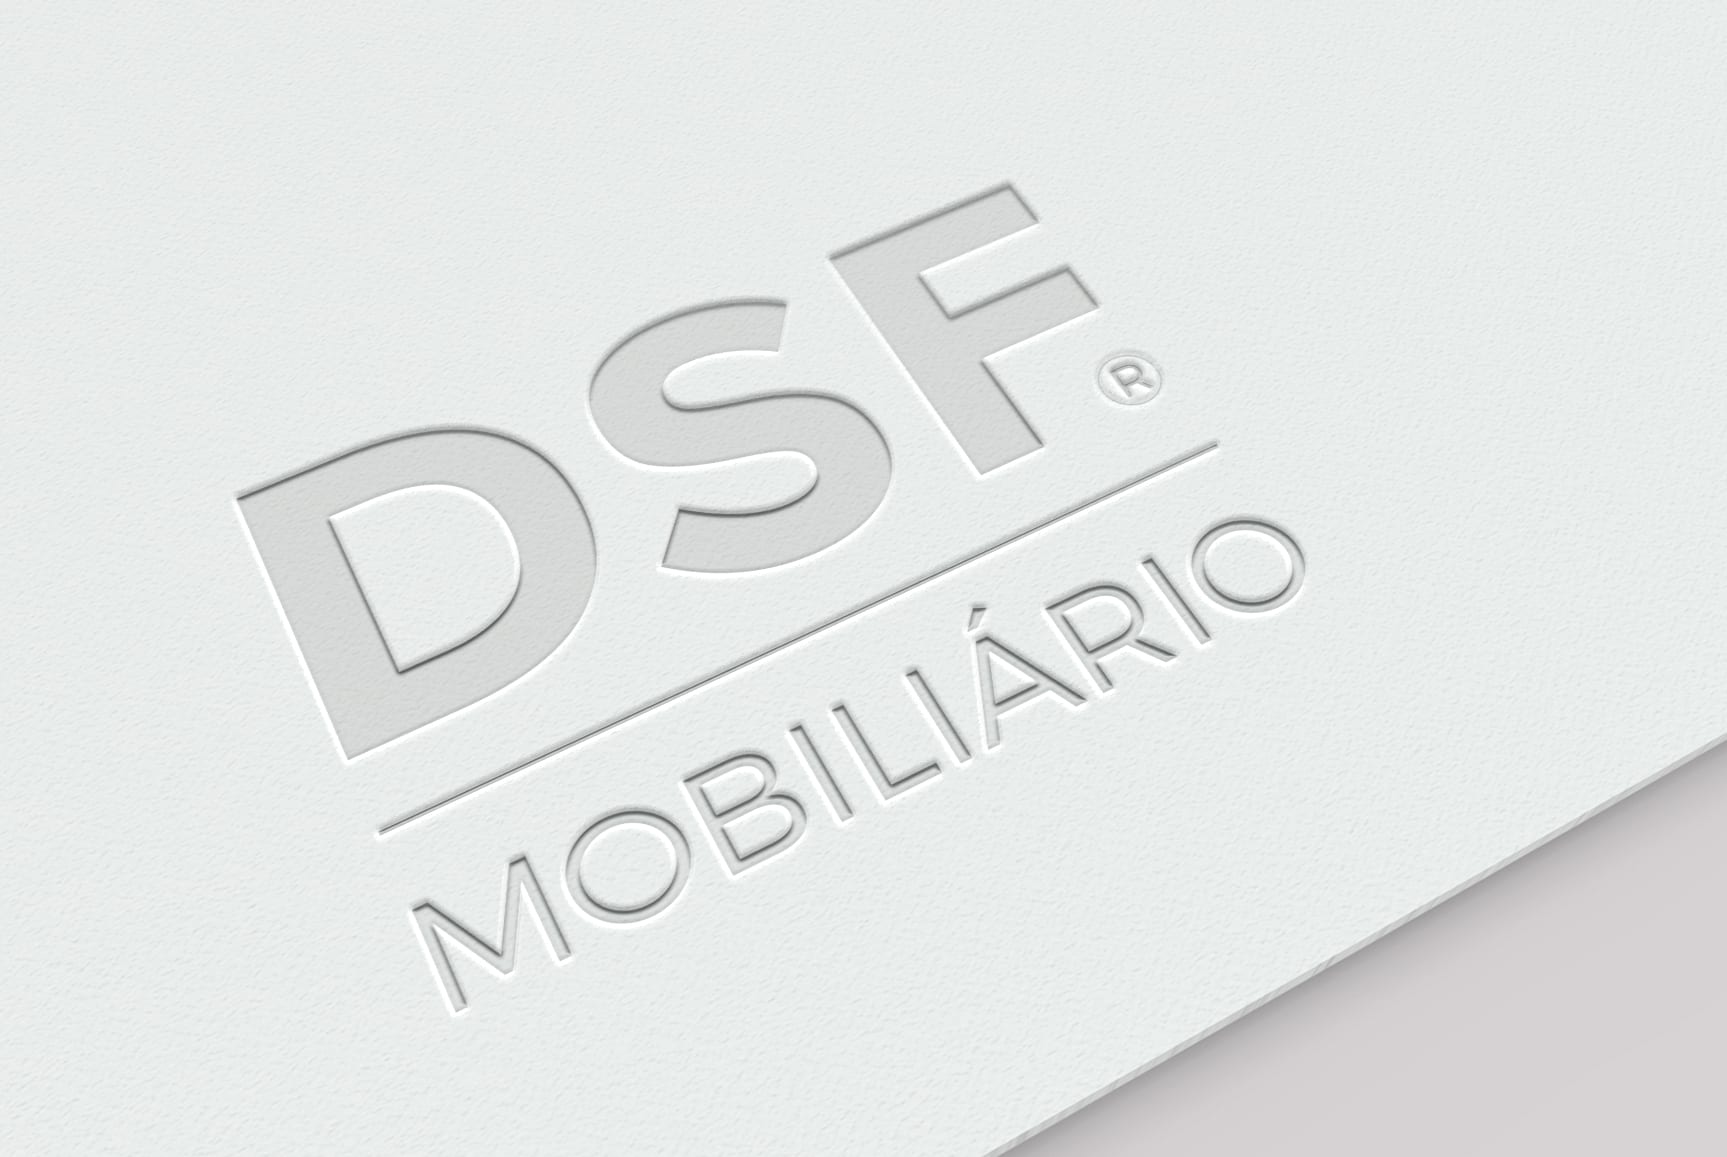 Identidade visual da empresa DSF Mobiliário